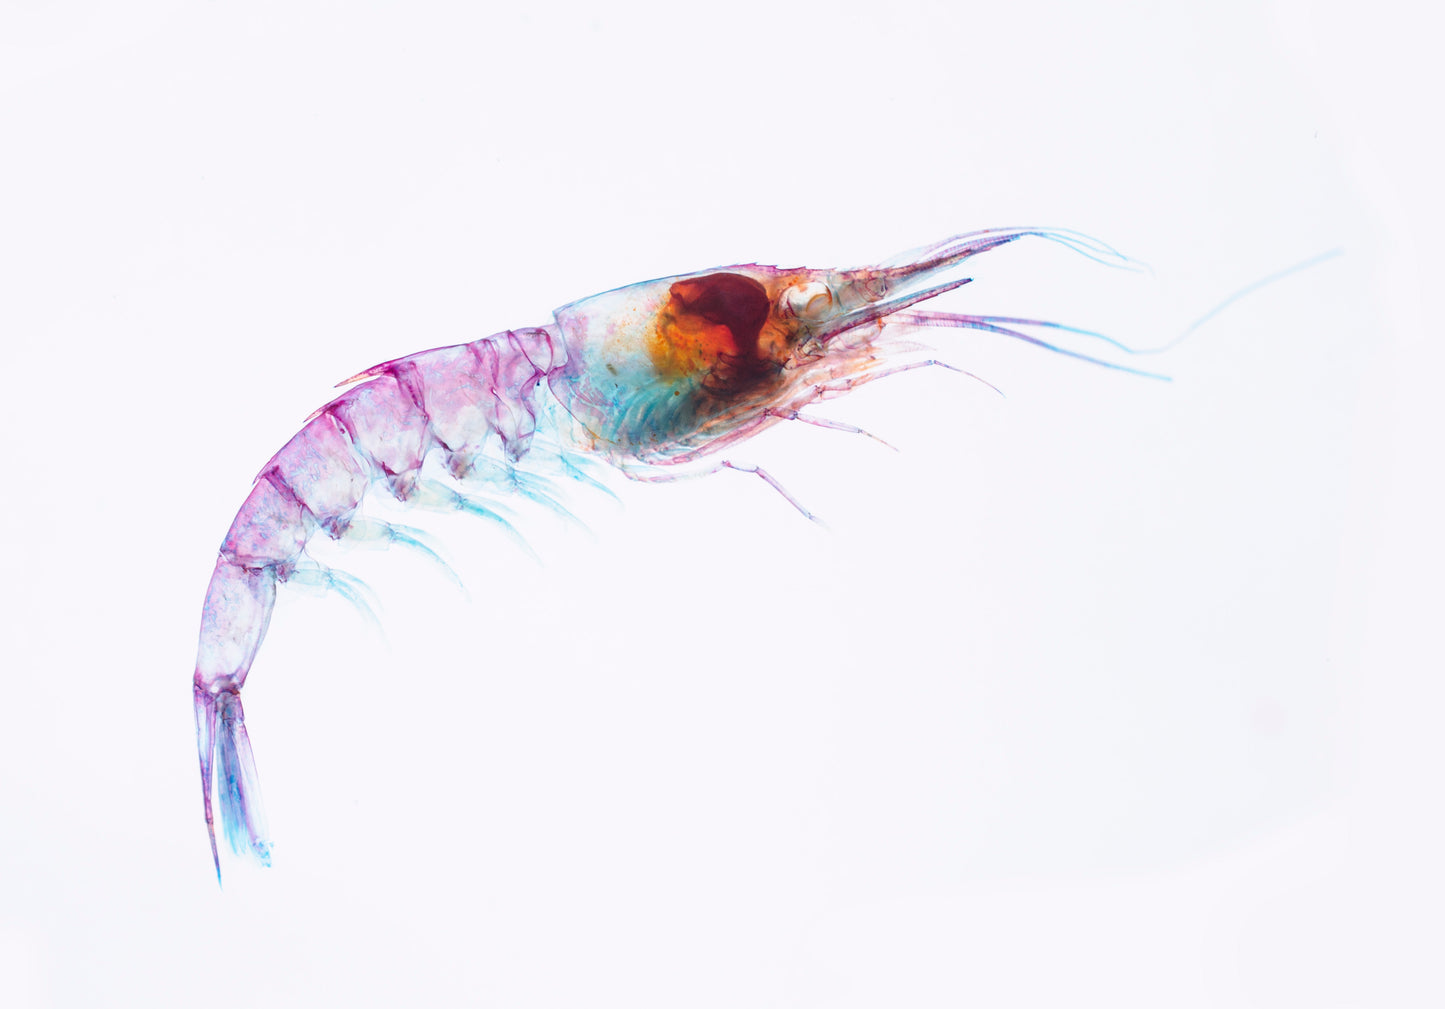 透明標本 刺蝦 蝦標本 台灣海洋生物